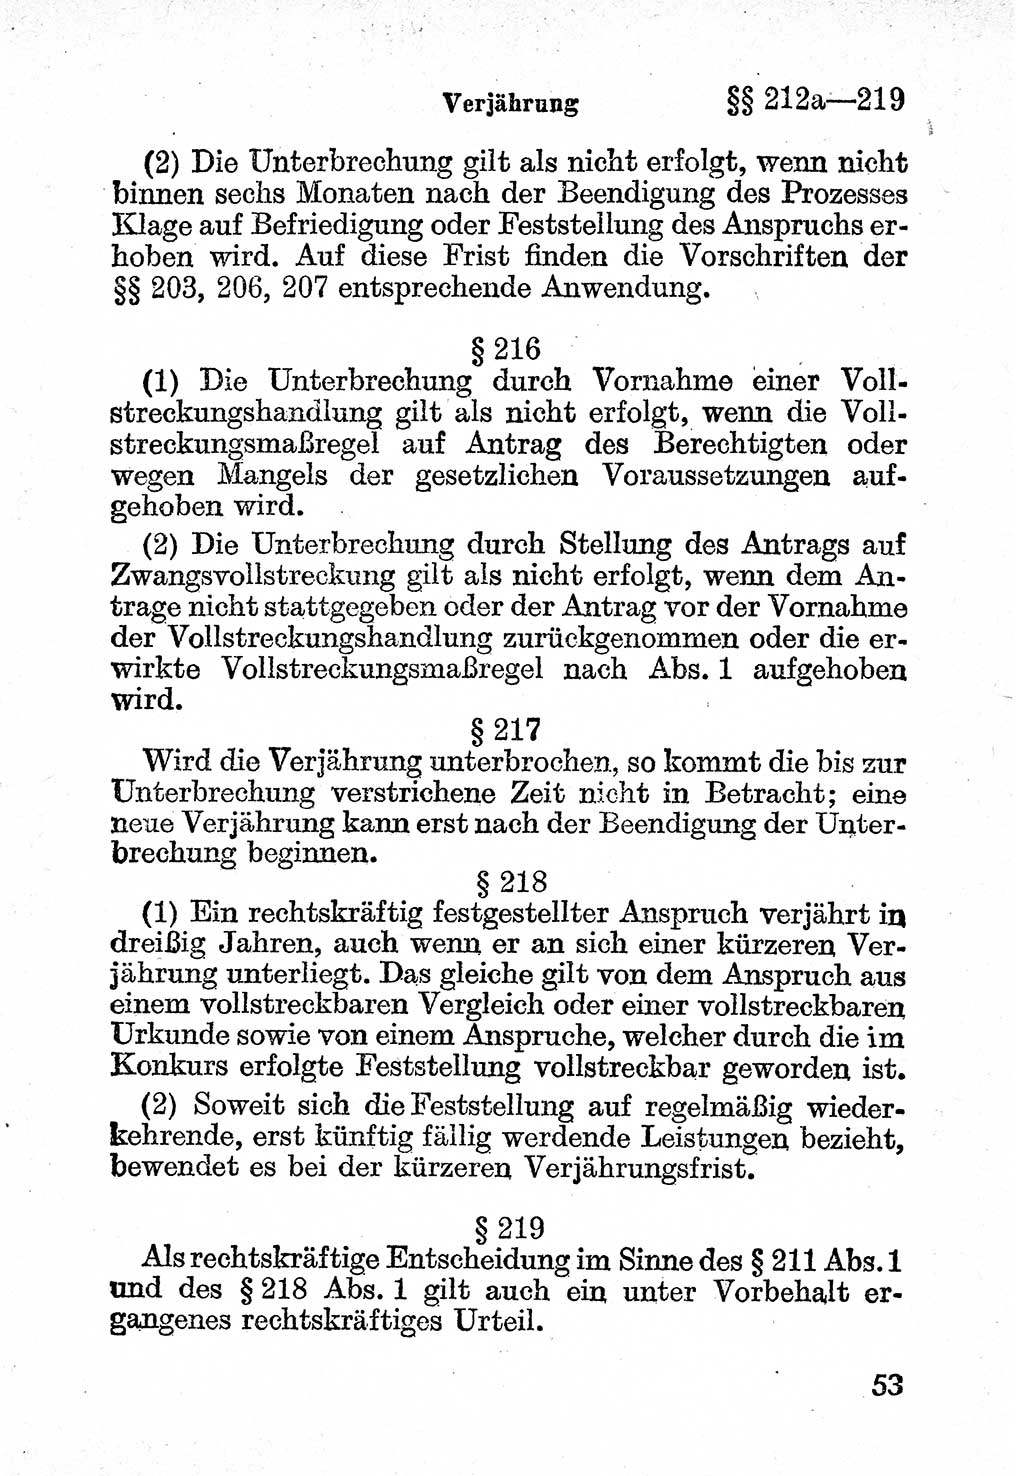 Bürgerliches Gesetzbuch (BGB) nebst wichtigen Nebengesetzen [Deutsche Demokratische Republik (DDR)] 1956, Seite 53 (BGB Nebenges. DDR 1956, S. 53)